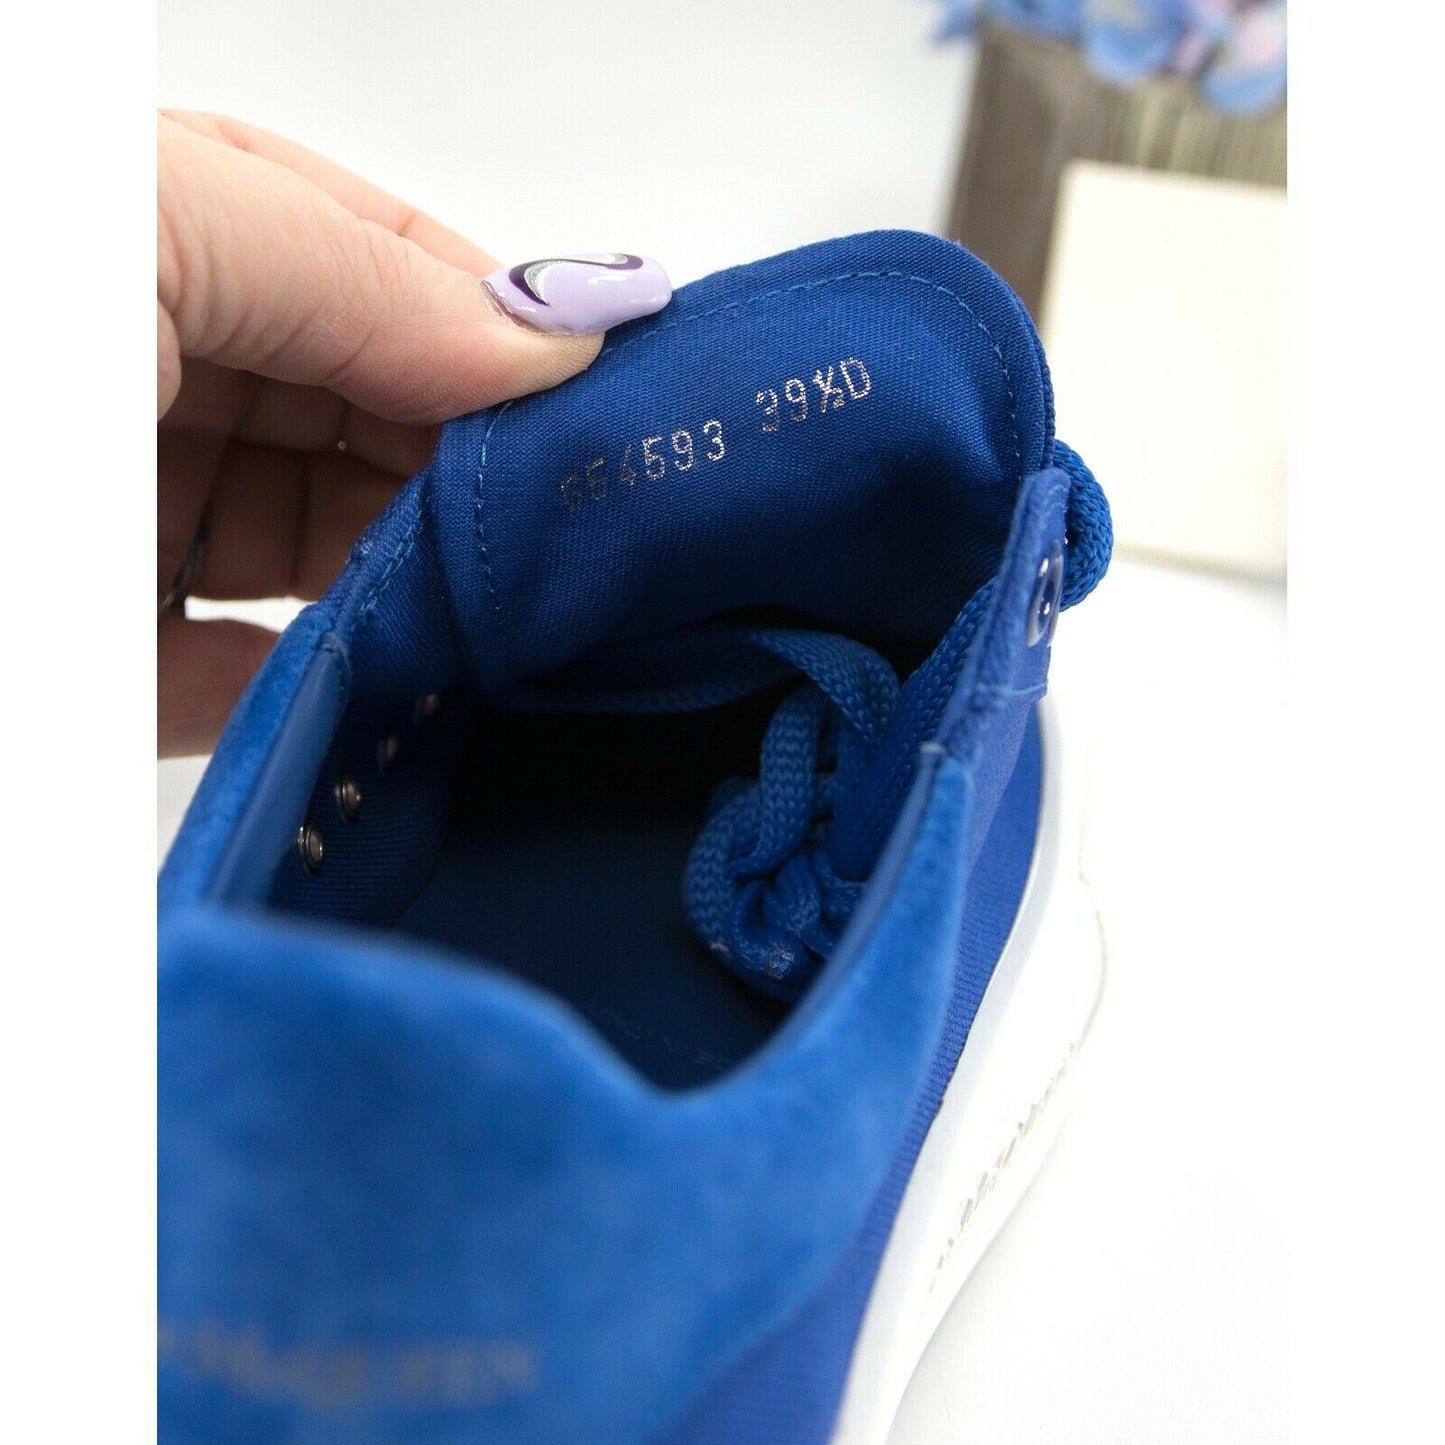 Alexander McQueen Deck Oversized Ultramarine Suede Canvas Sneakers 39.5 NIB